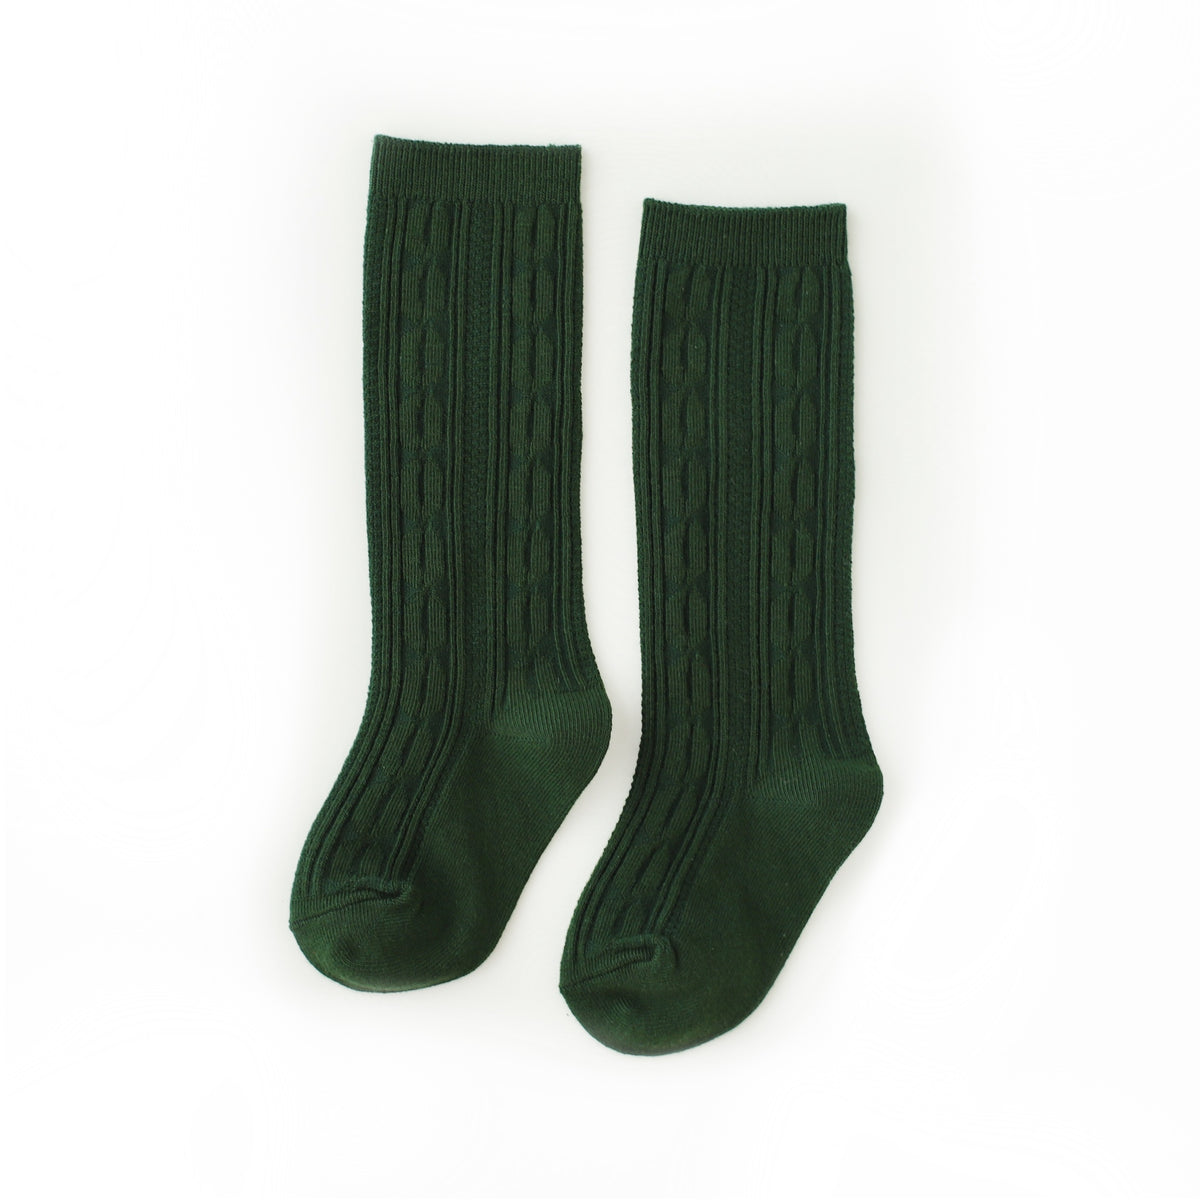 Forest Green Knee High Socks kids dark green socks